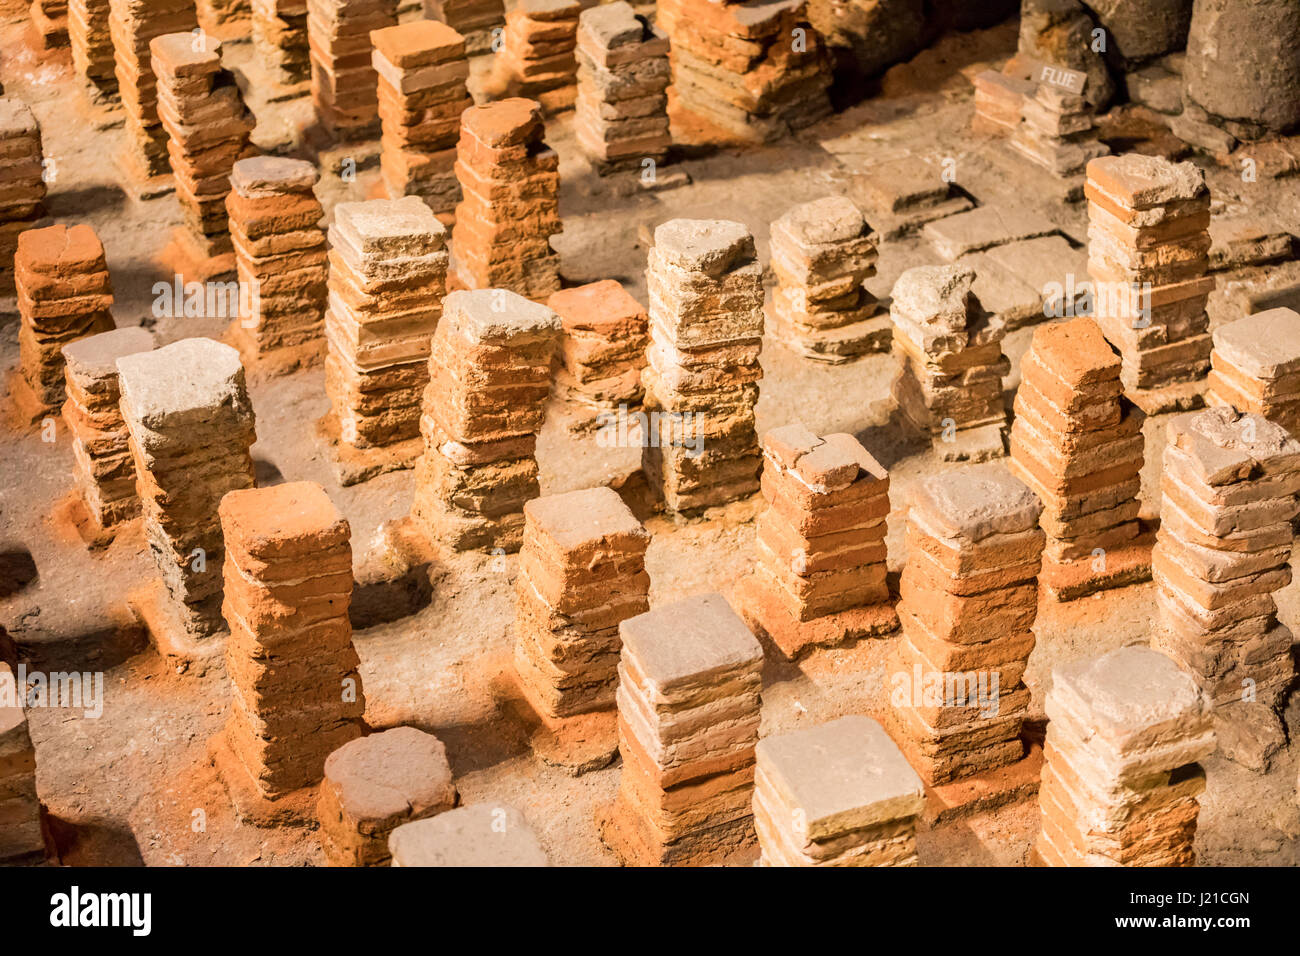 Des piles de briques en terre cuite utilisées pour soutenir un plancher dans le bains romains de Bath, Angleterre Royaume-uni Banque D'Images